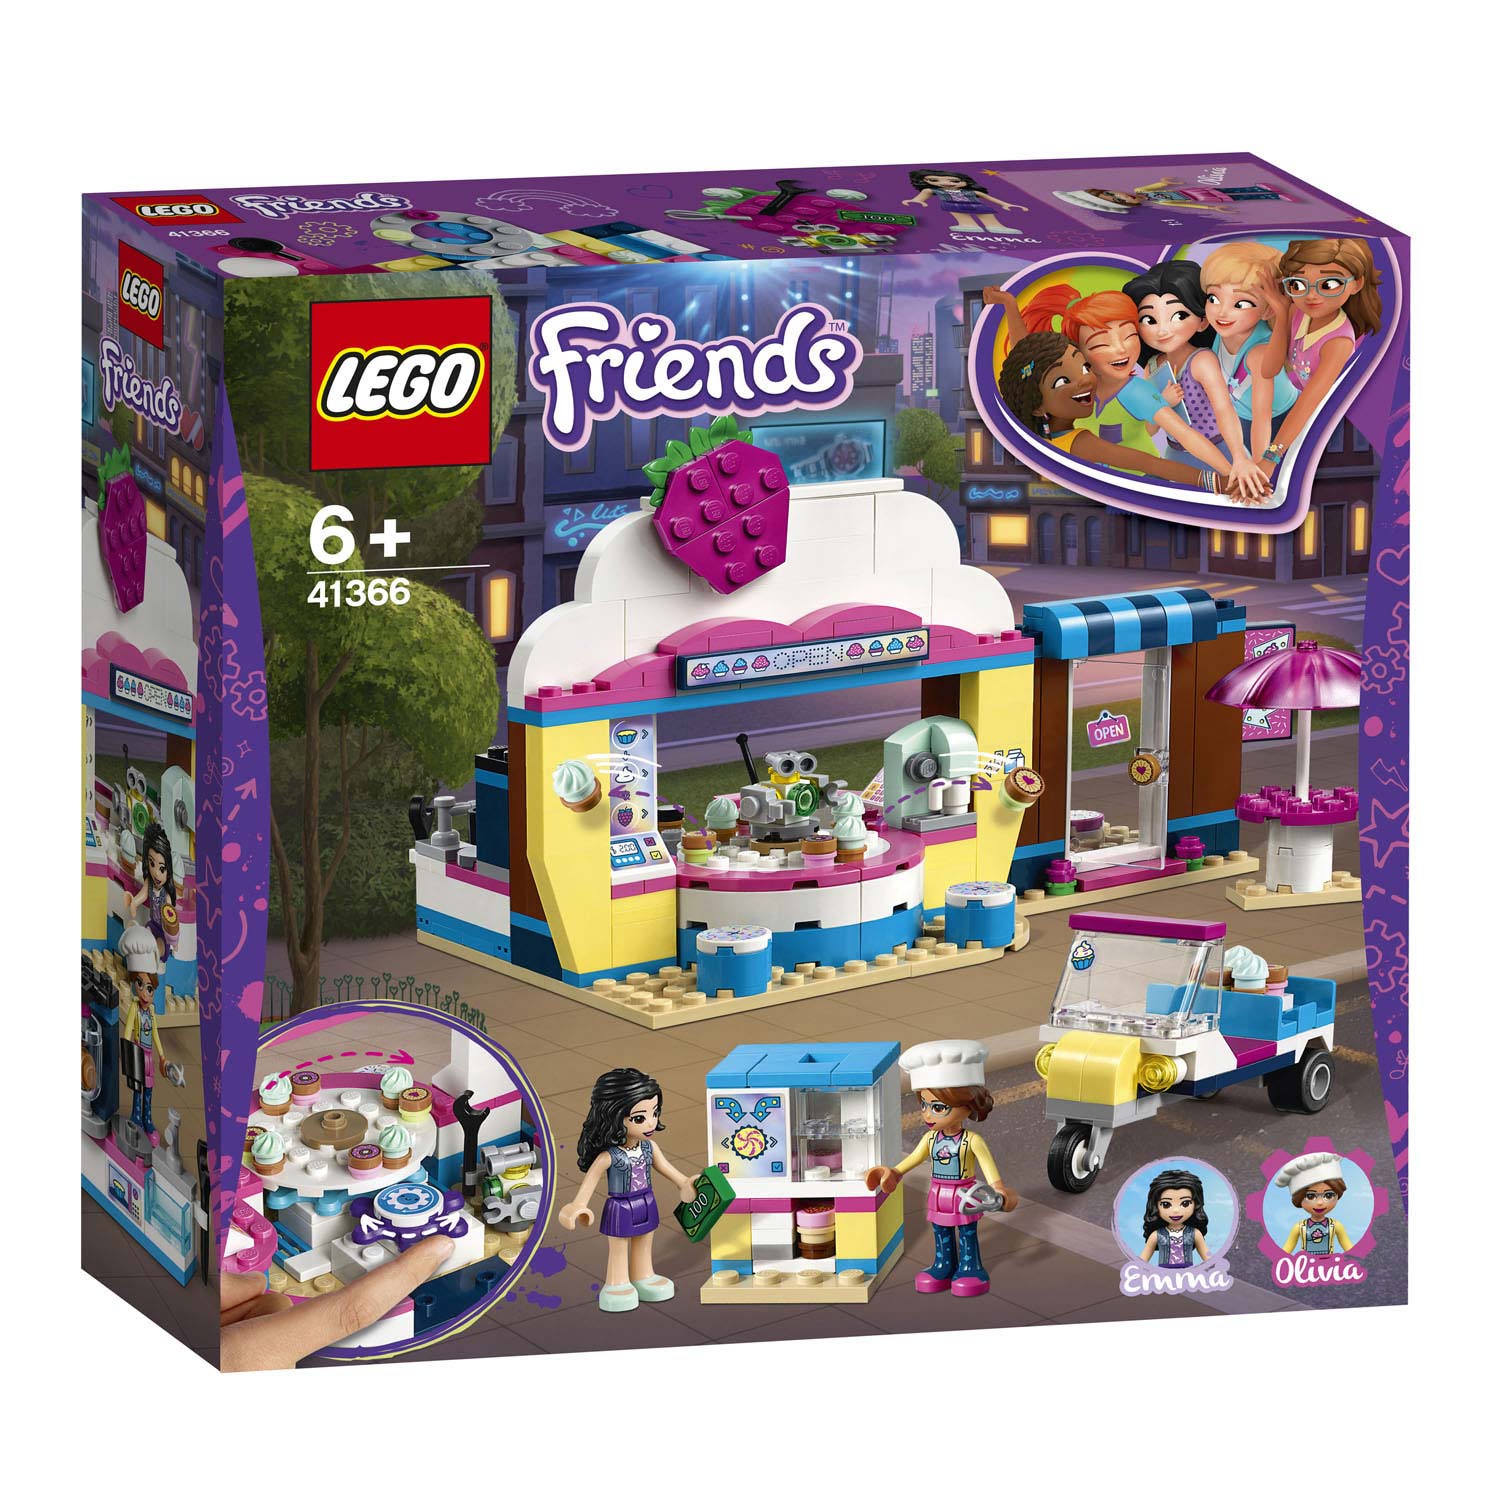 LEGO Friends 41366 Olivia's Cupcake Café